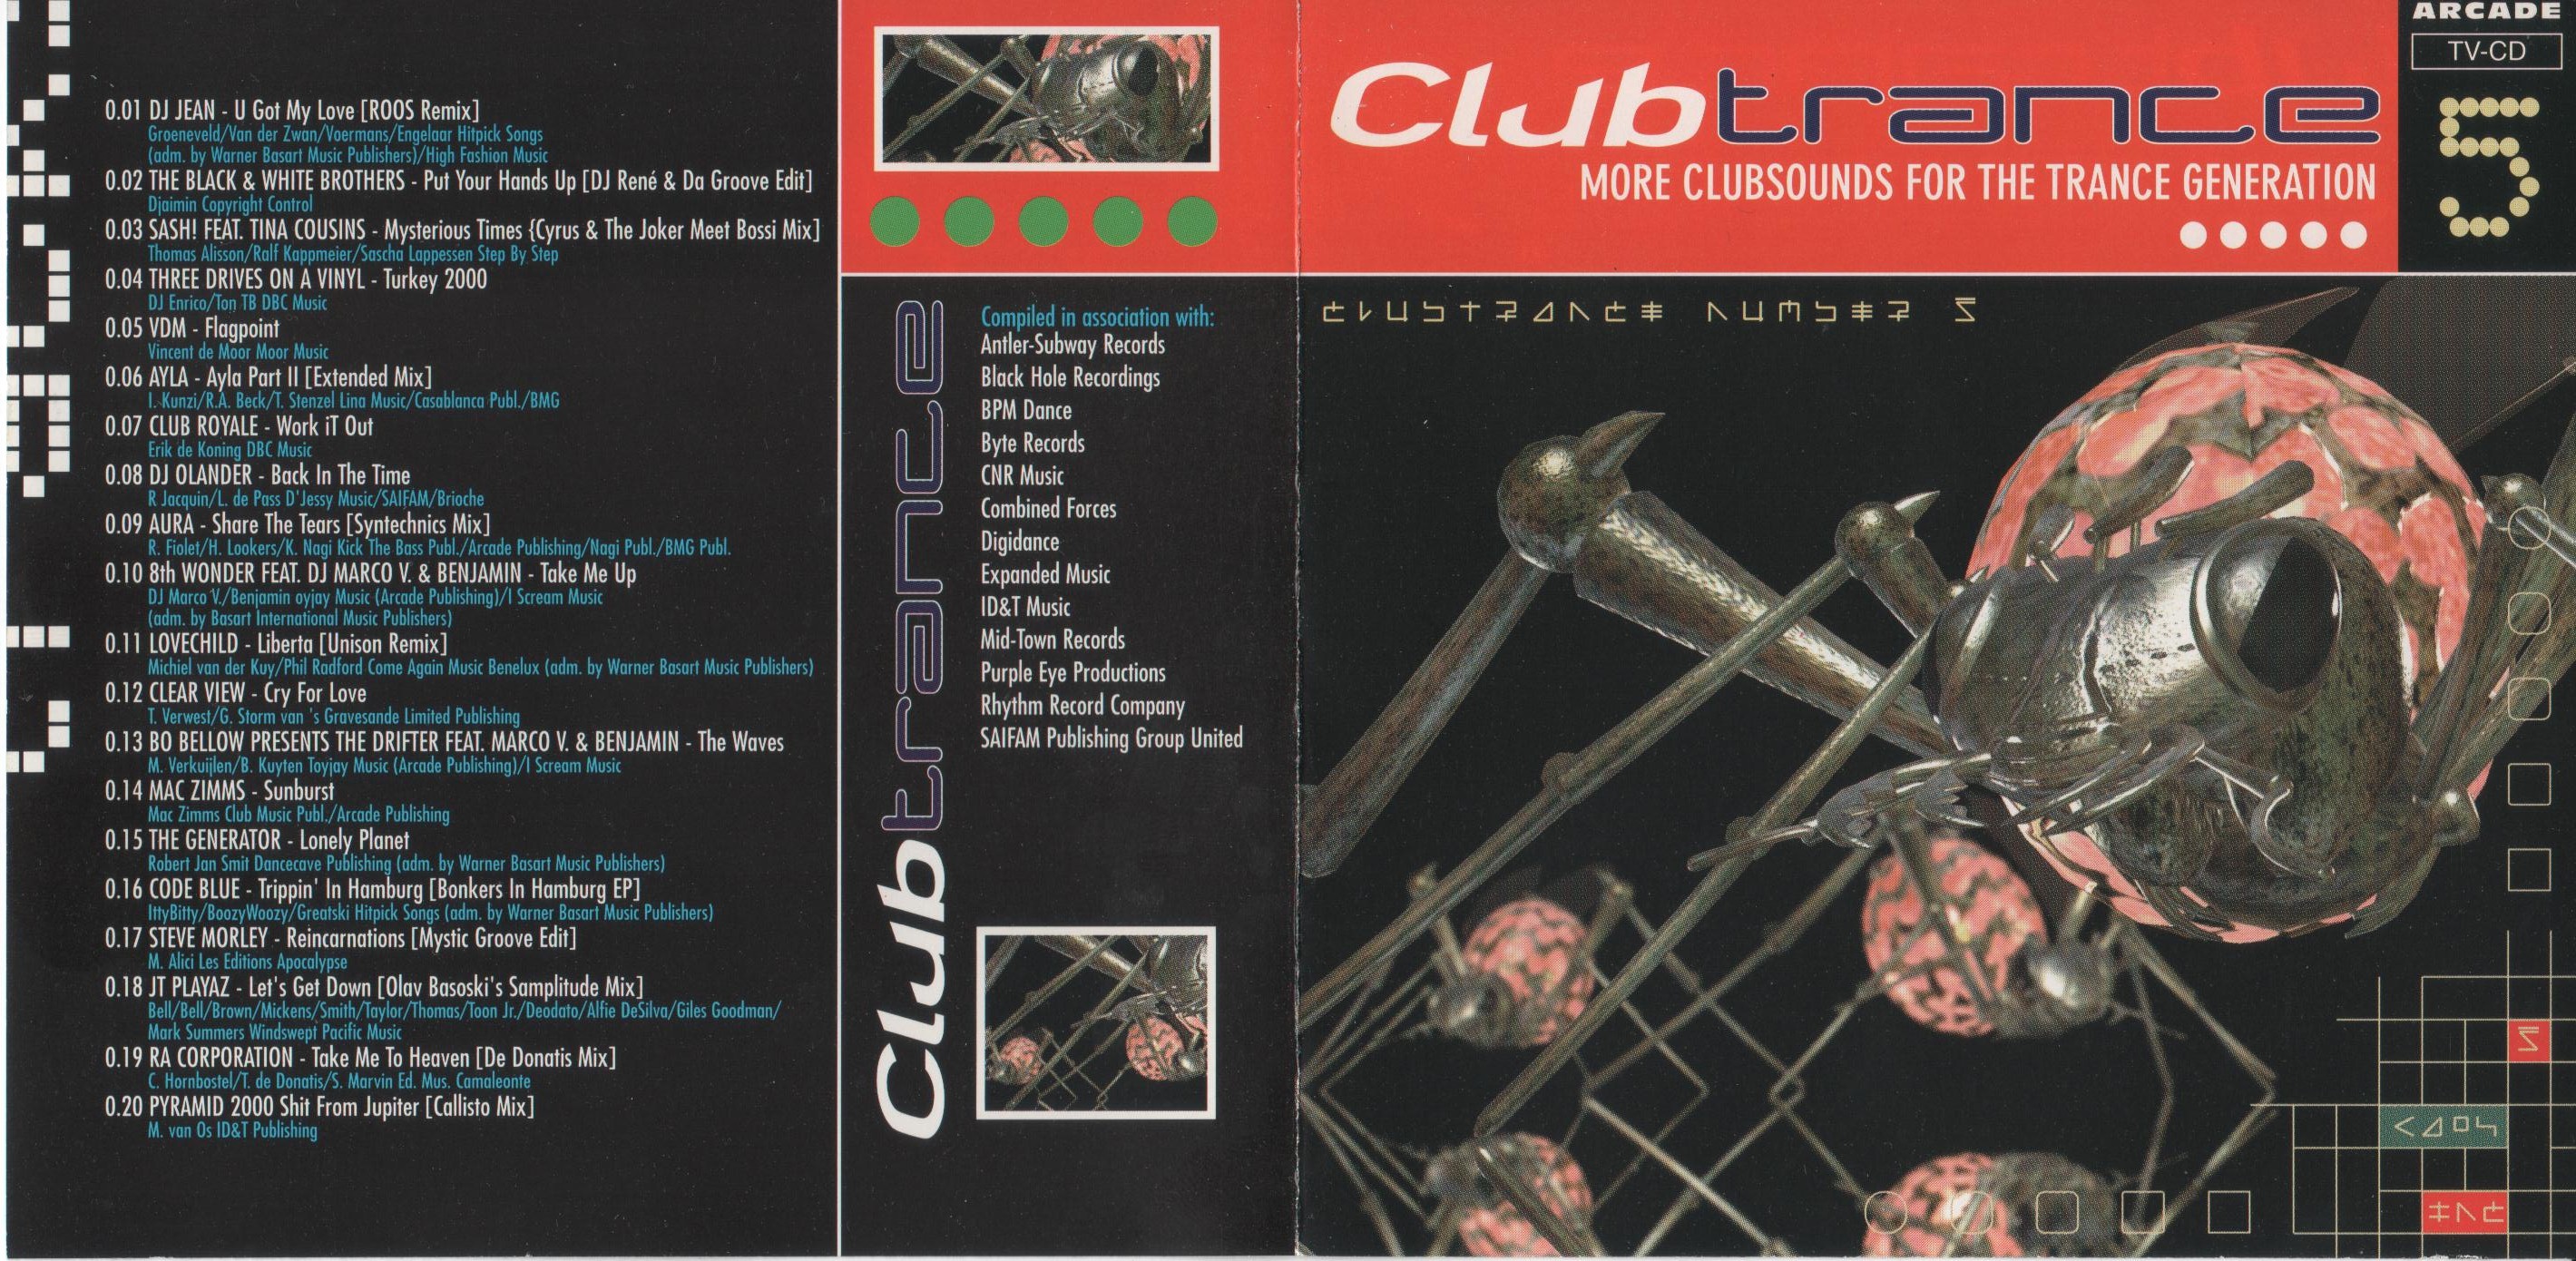 Club Trance 5 (Arcade 1998)